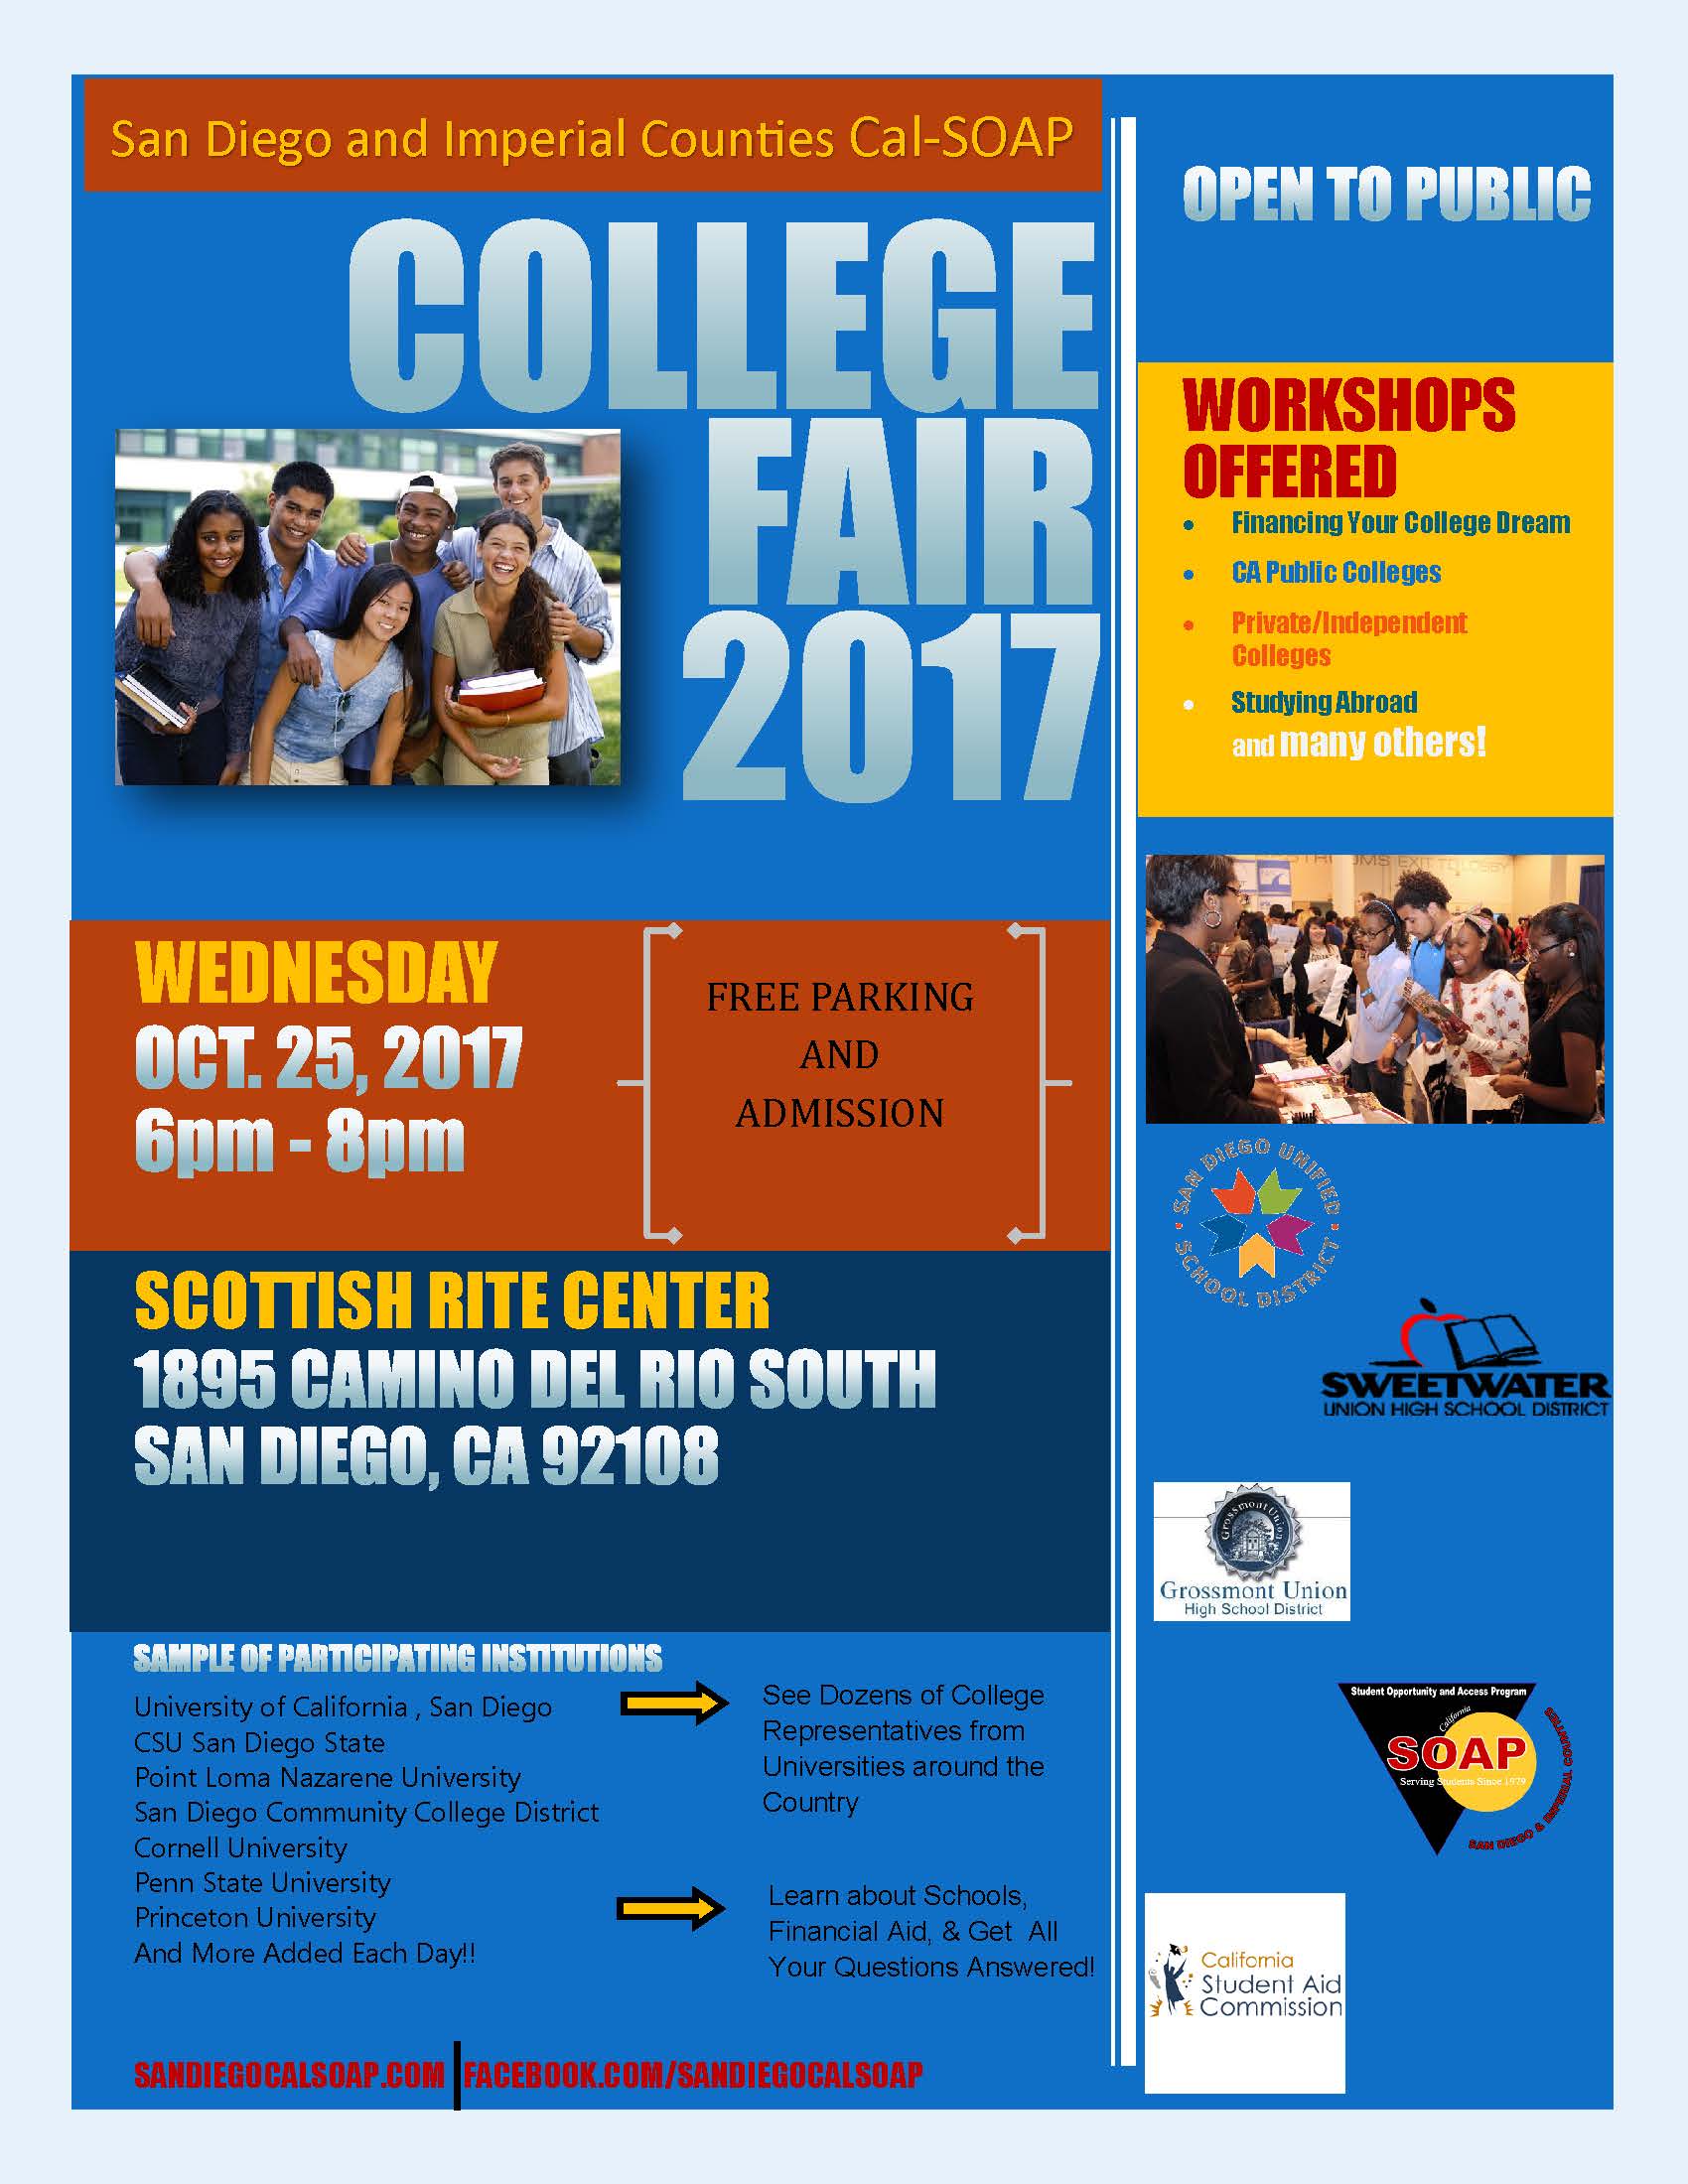 College Fair 2017 Information